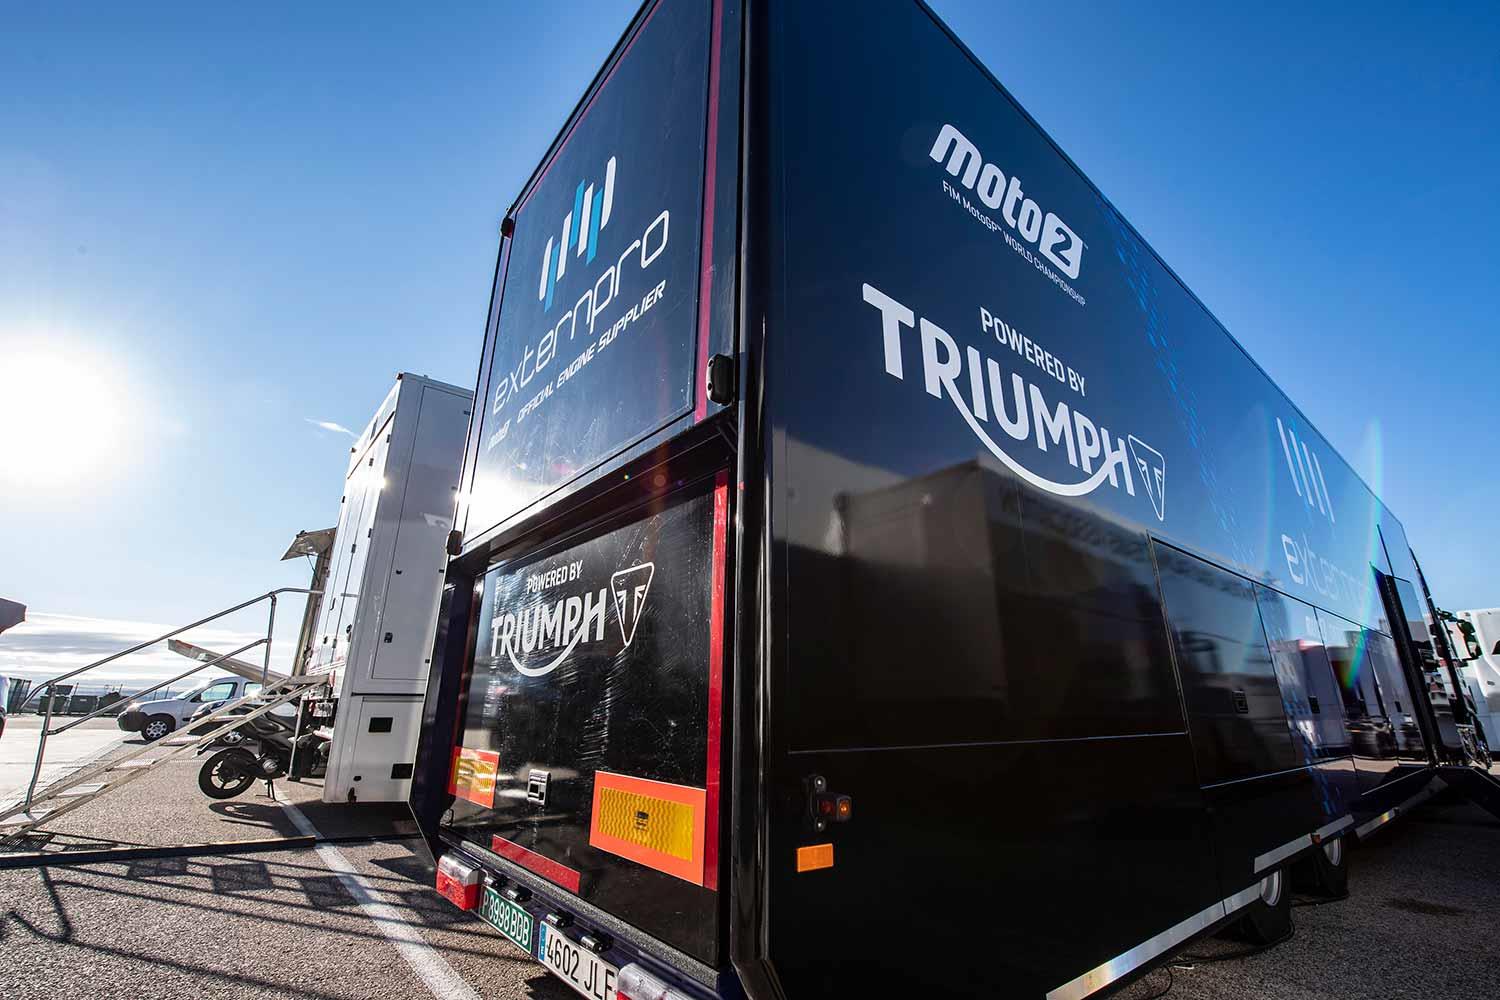 MotoGP: Triumph and Dorna extend Moto2 engine partnership